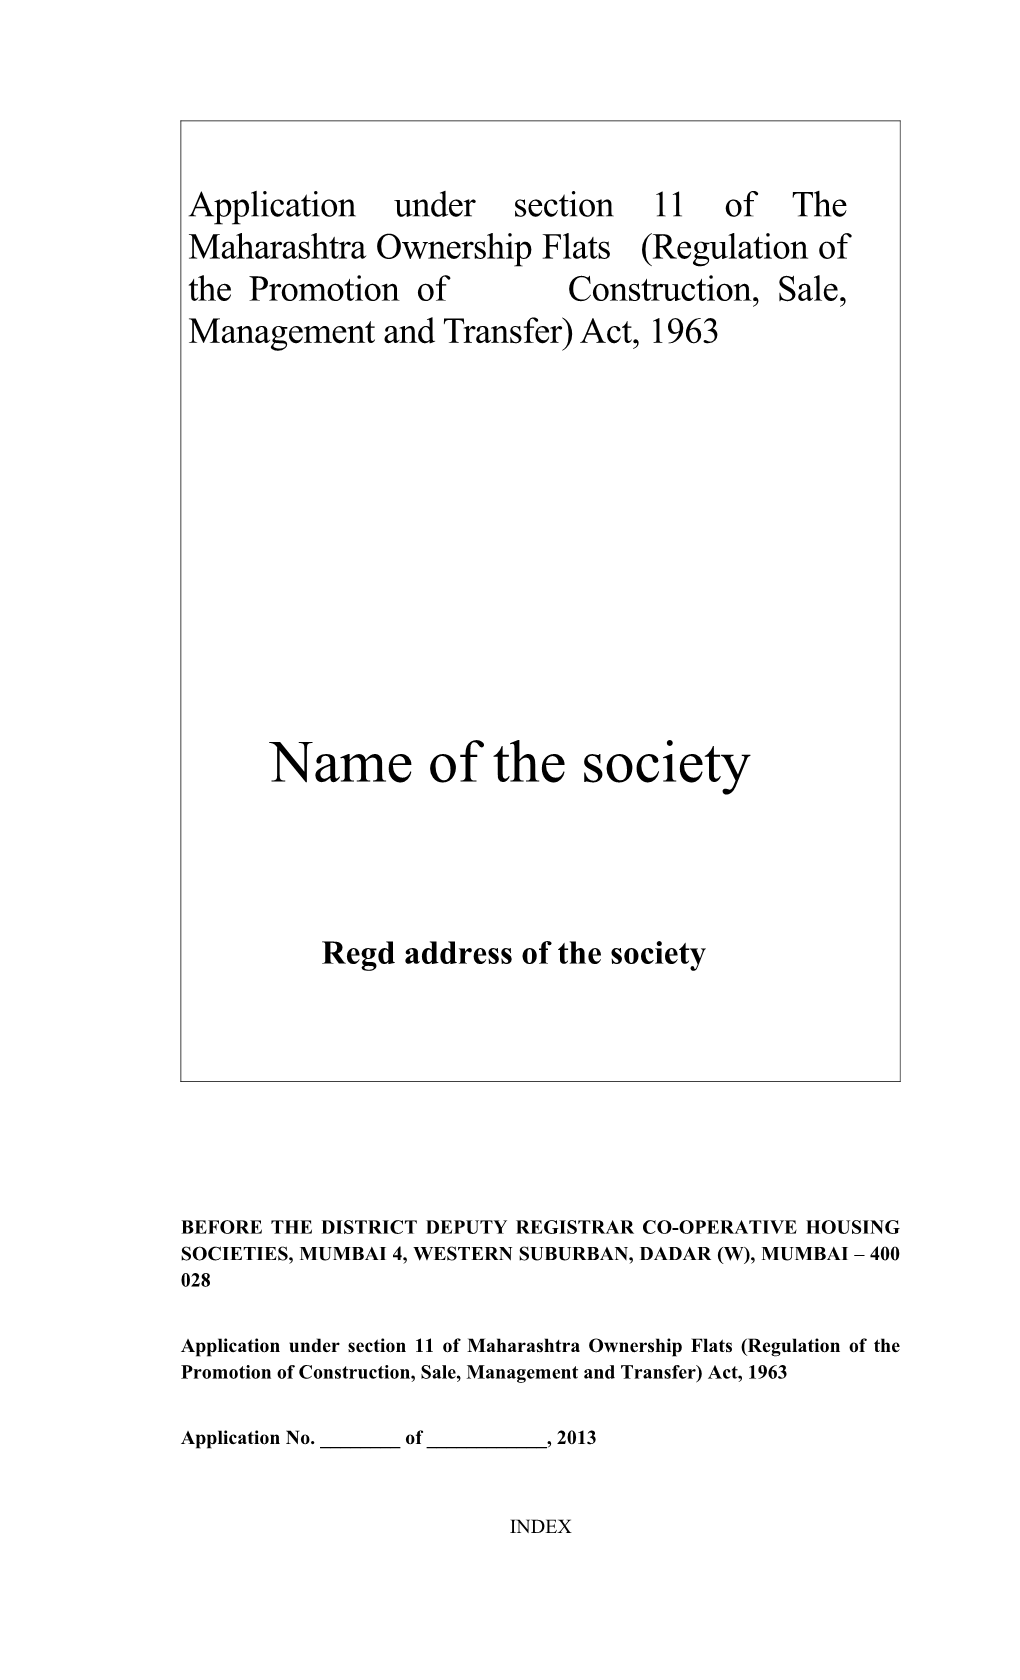 Regd Address of the Society